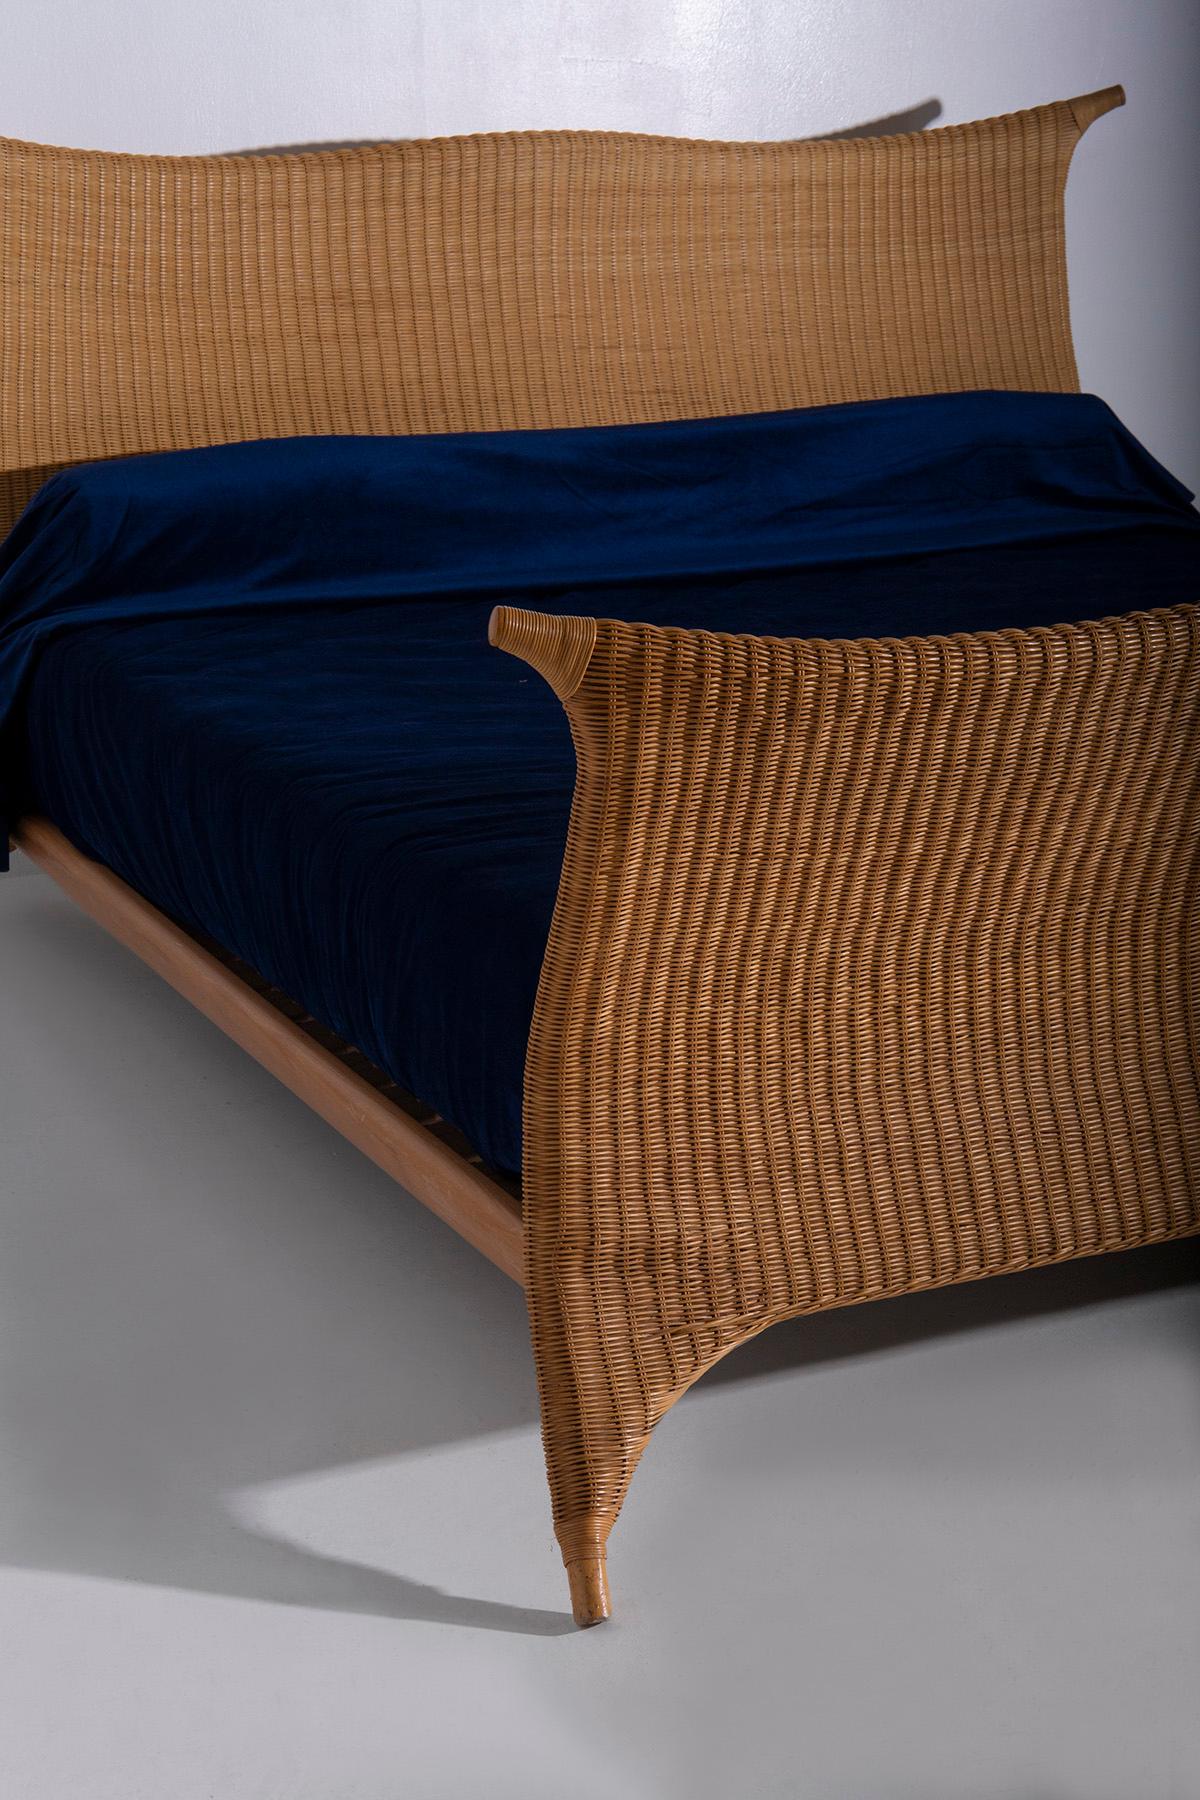 Italian rattan bed by PierAntonio Bonacina, with label 7